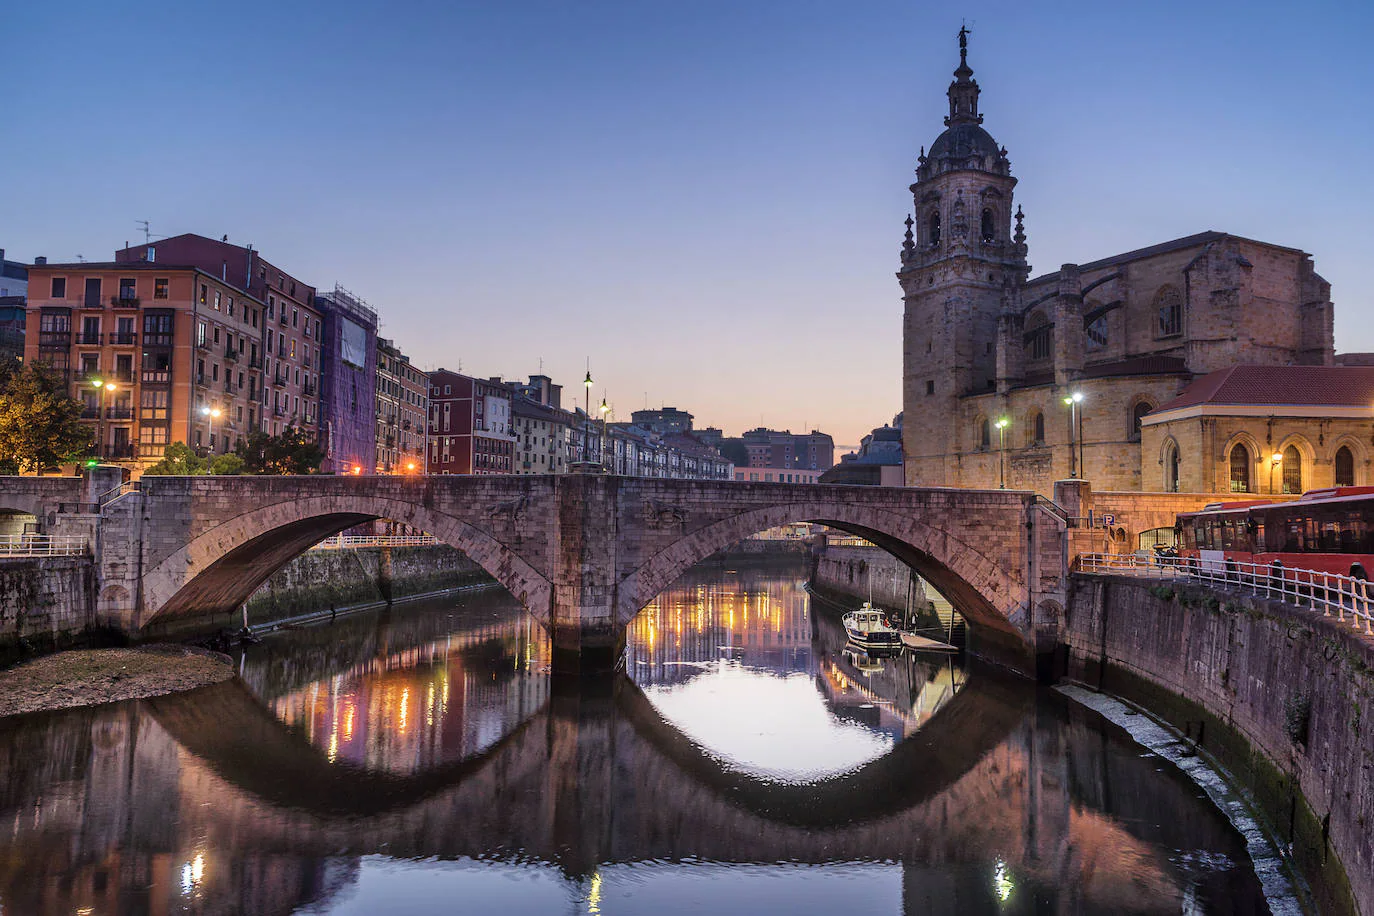 3.-Bilbao | El 69% de sus vecinos están satisfechos con el lugar en el que residen según el estudio de la OCU.